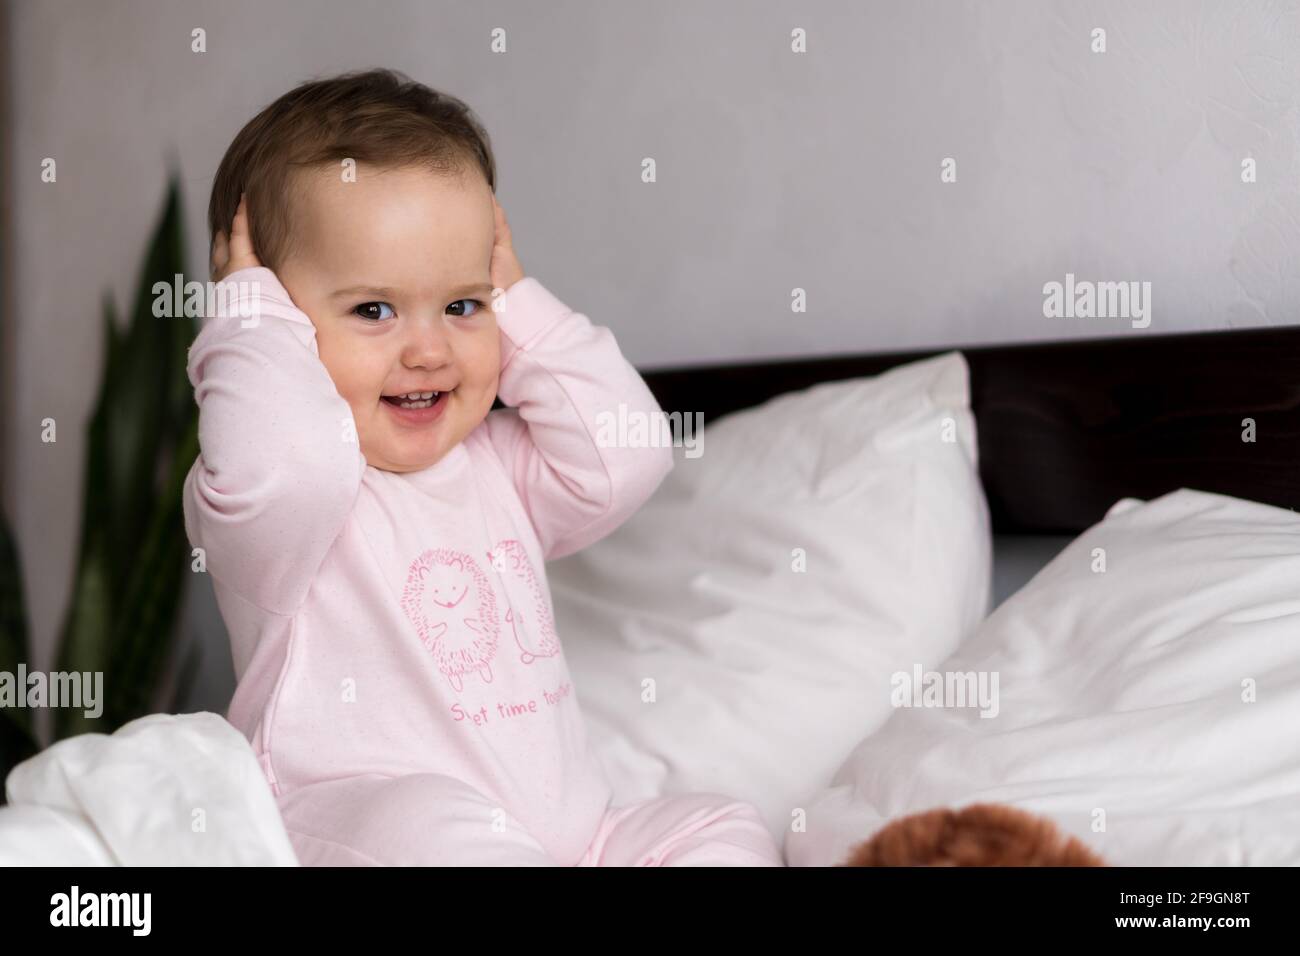 Authentische Porträt kaukasischen kleinen Säugling mollig Baby Mädchen oder Jungen In rosa verschlammen beim Aufwachen Blick auf die Kamera lächelnd niedlich Und Grimassen im weißen Bett Stockfoto